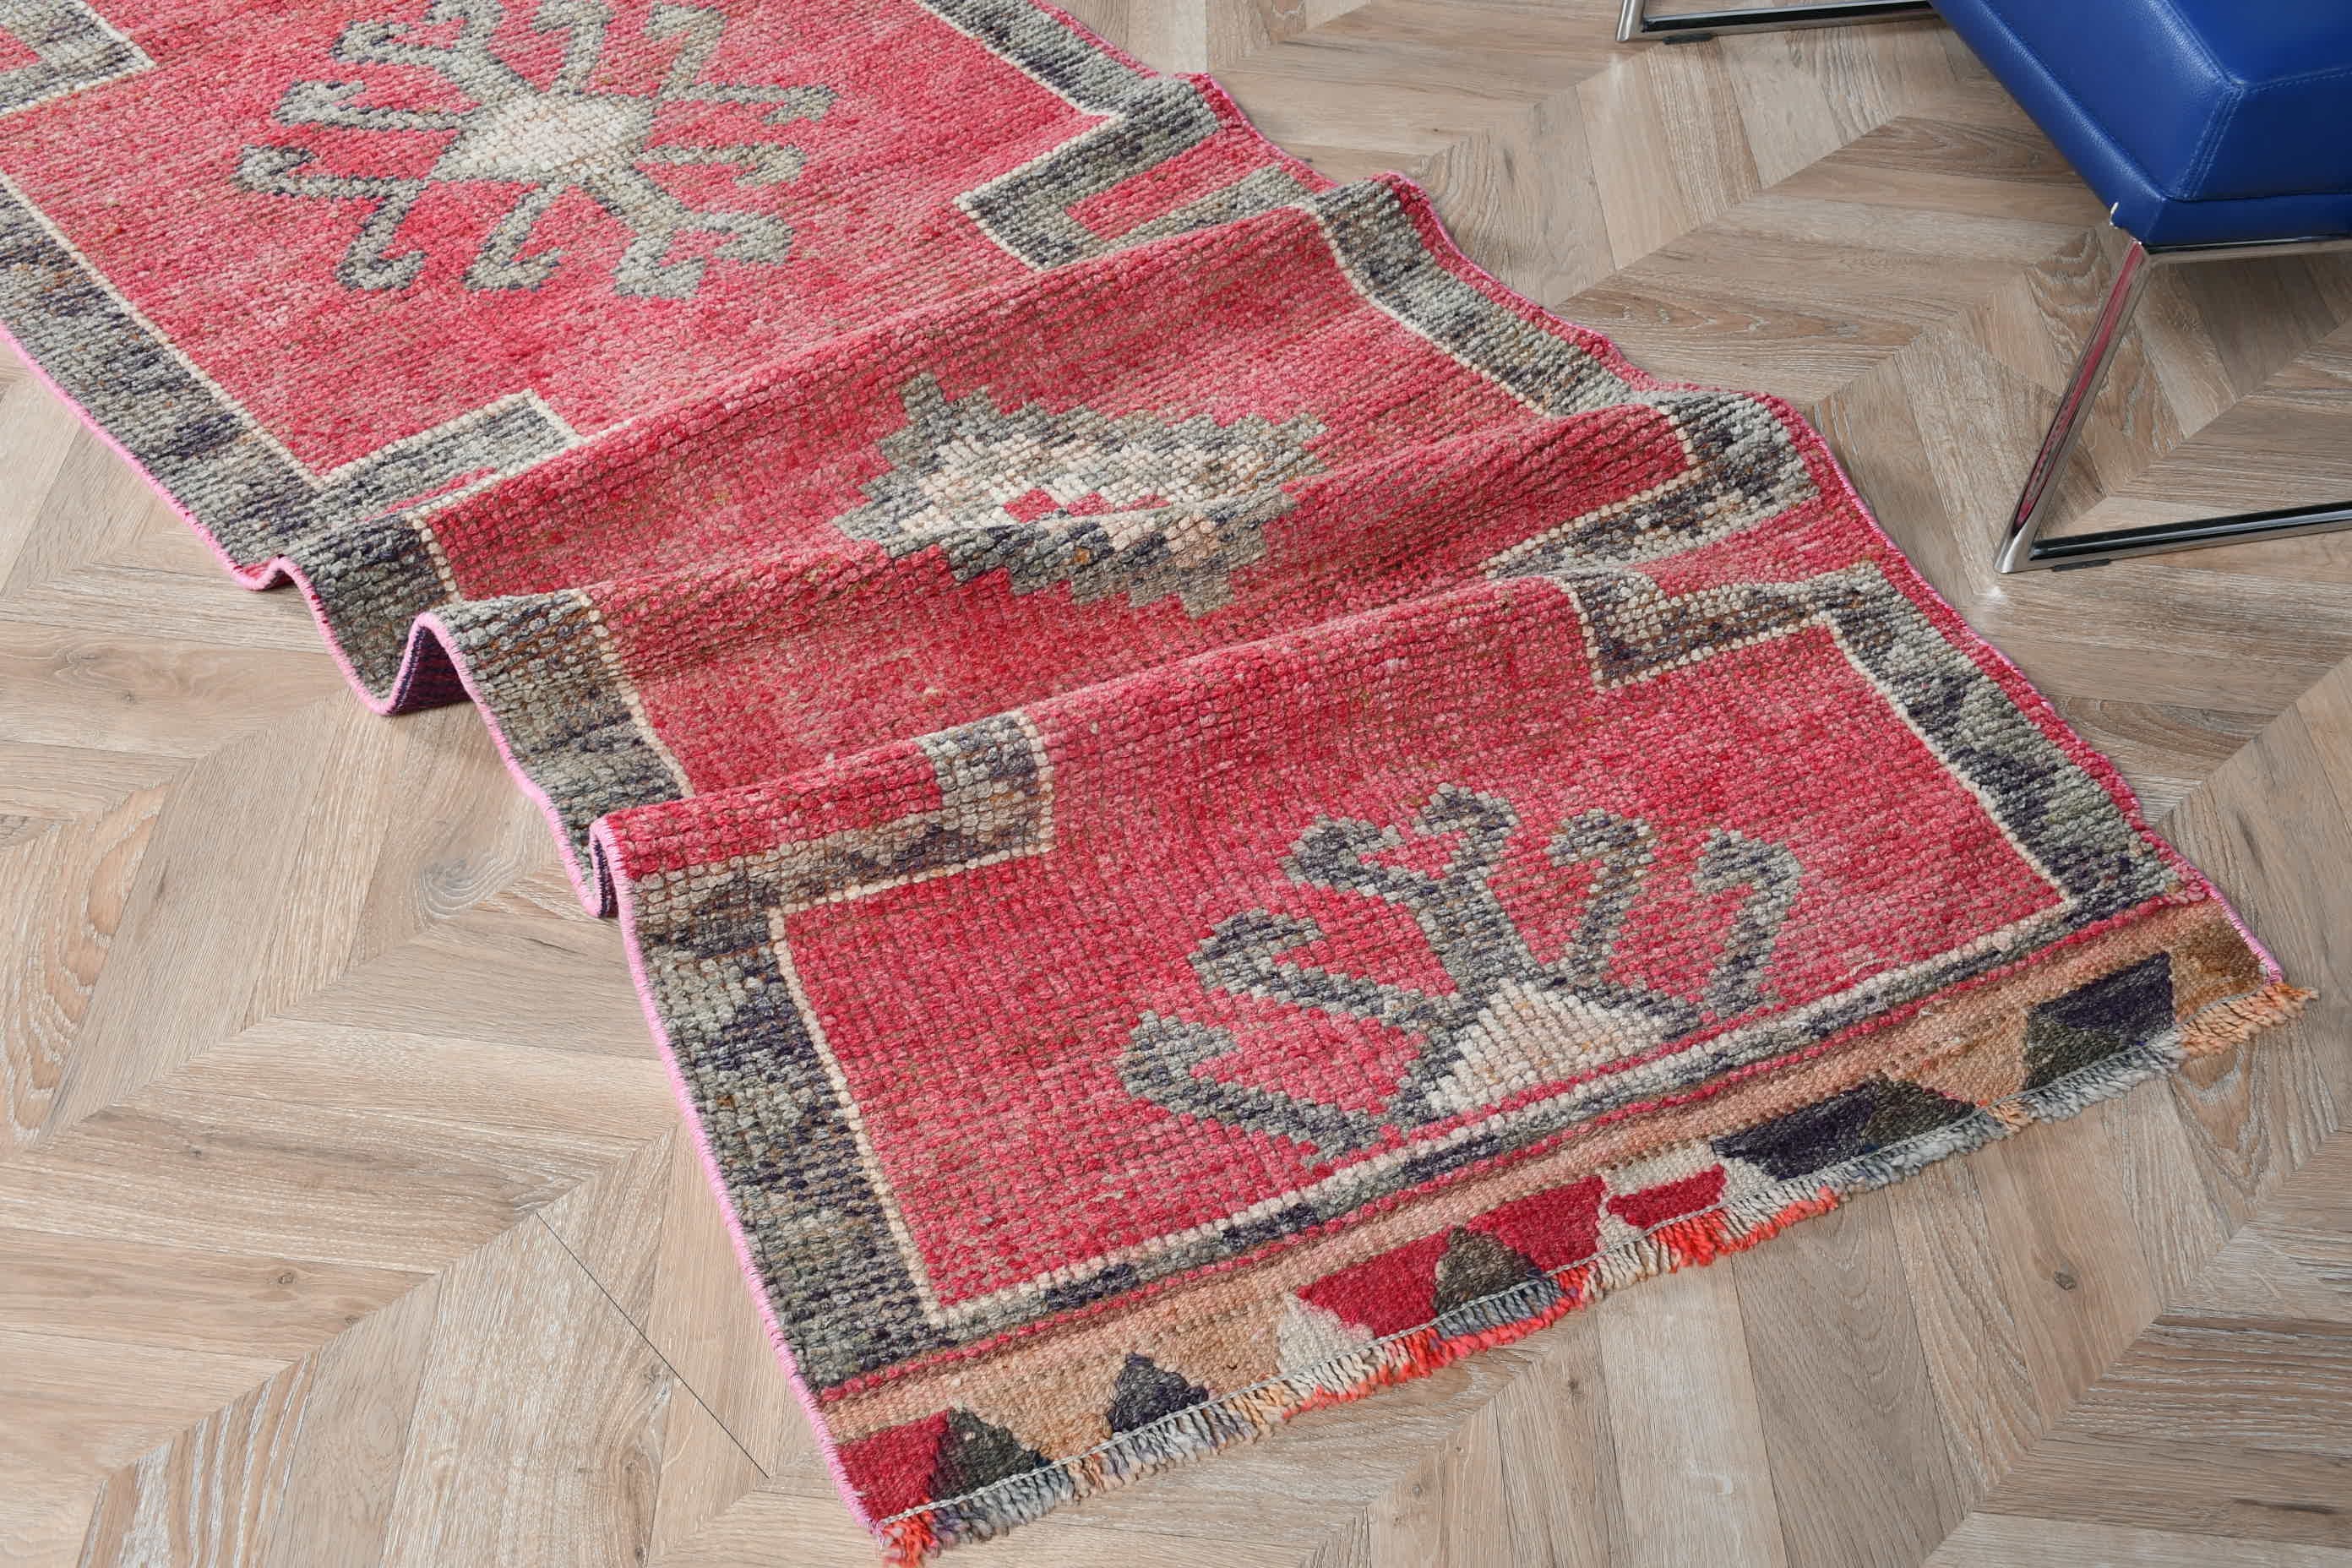 Floor Rugs, Boho Rug, Turkish Rug, Rugs for Corridor, Vintage Rug, 2.9x10 ft Runner Rug, Corridor Rugs, Pink Oushak Rugs, Moroccan Rugs